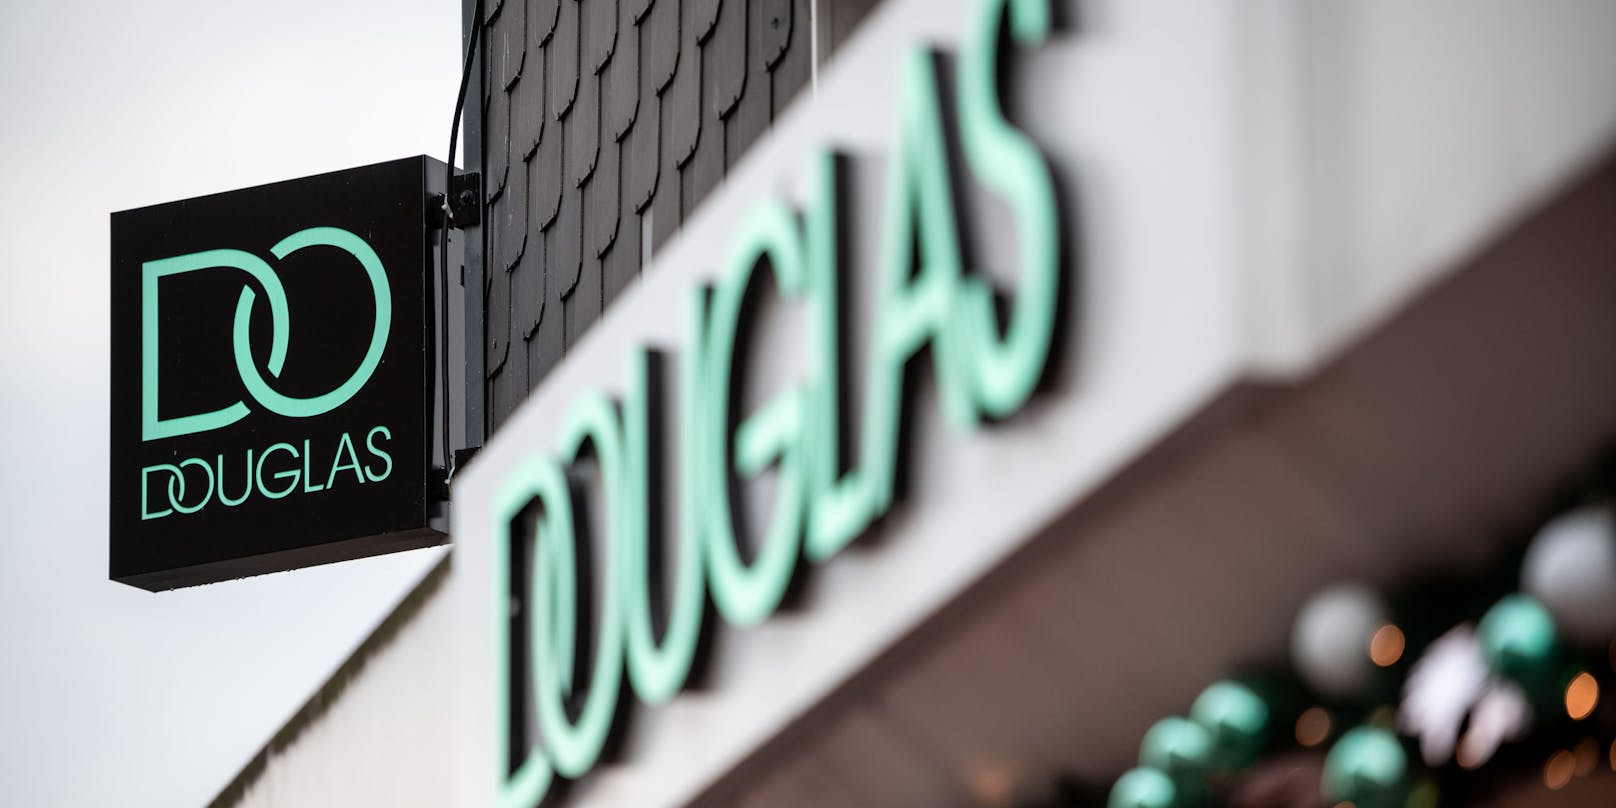 Die Parfümeriekette Douglas betreibt in Österreich 45 Filialen. Ihre Zukunft ist ungewiss.&nbsp;